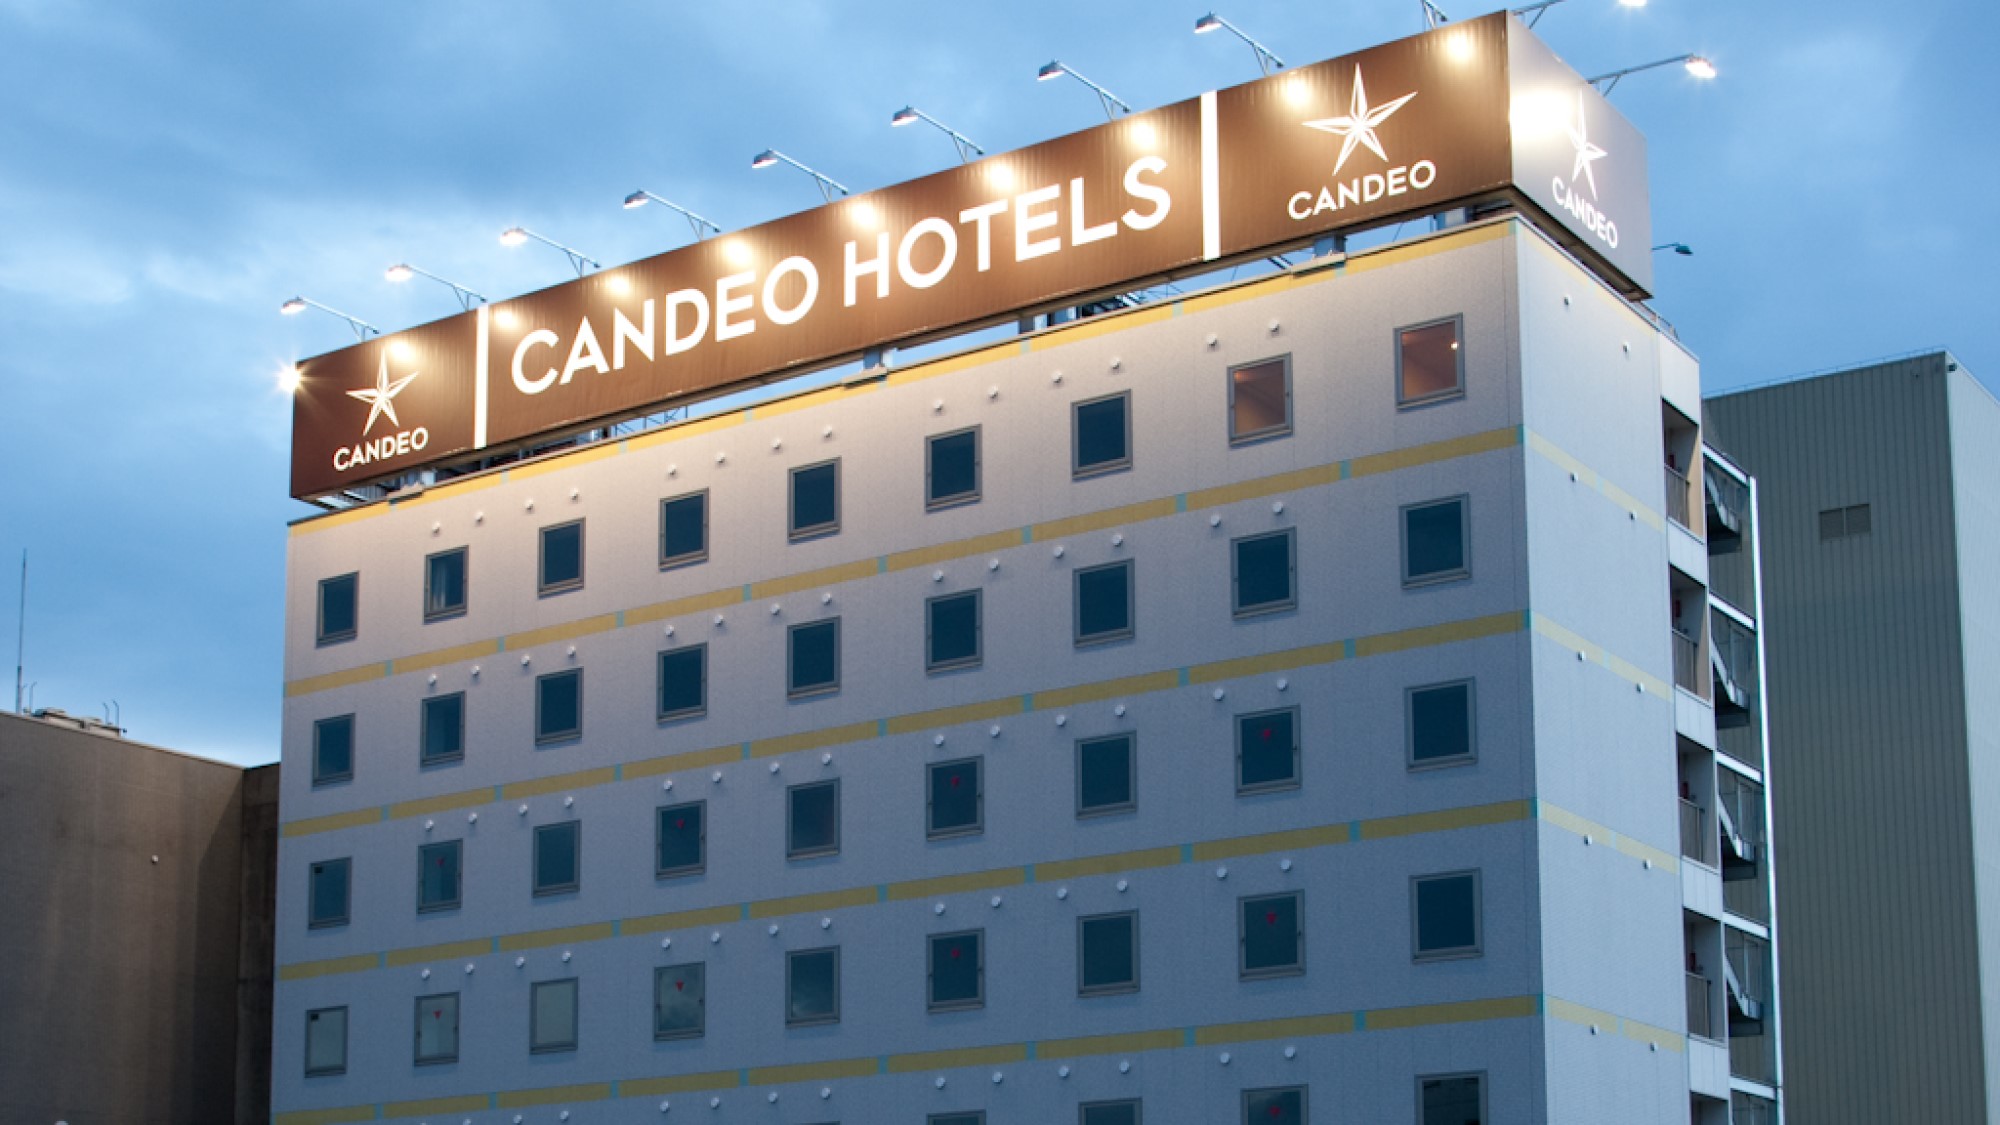 CANDEO HOTELS (칸데오 호텔즈) 우에노 고엔